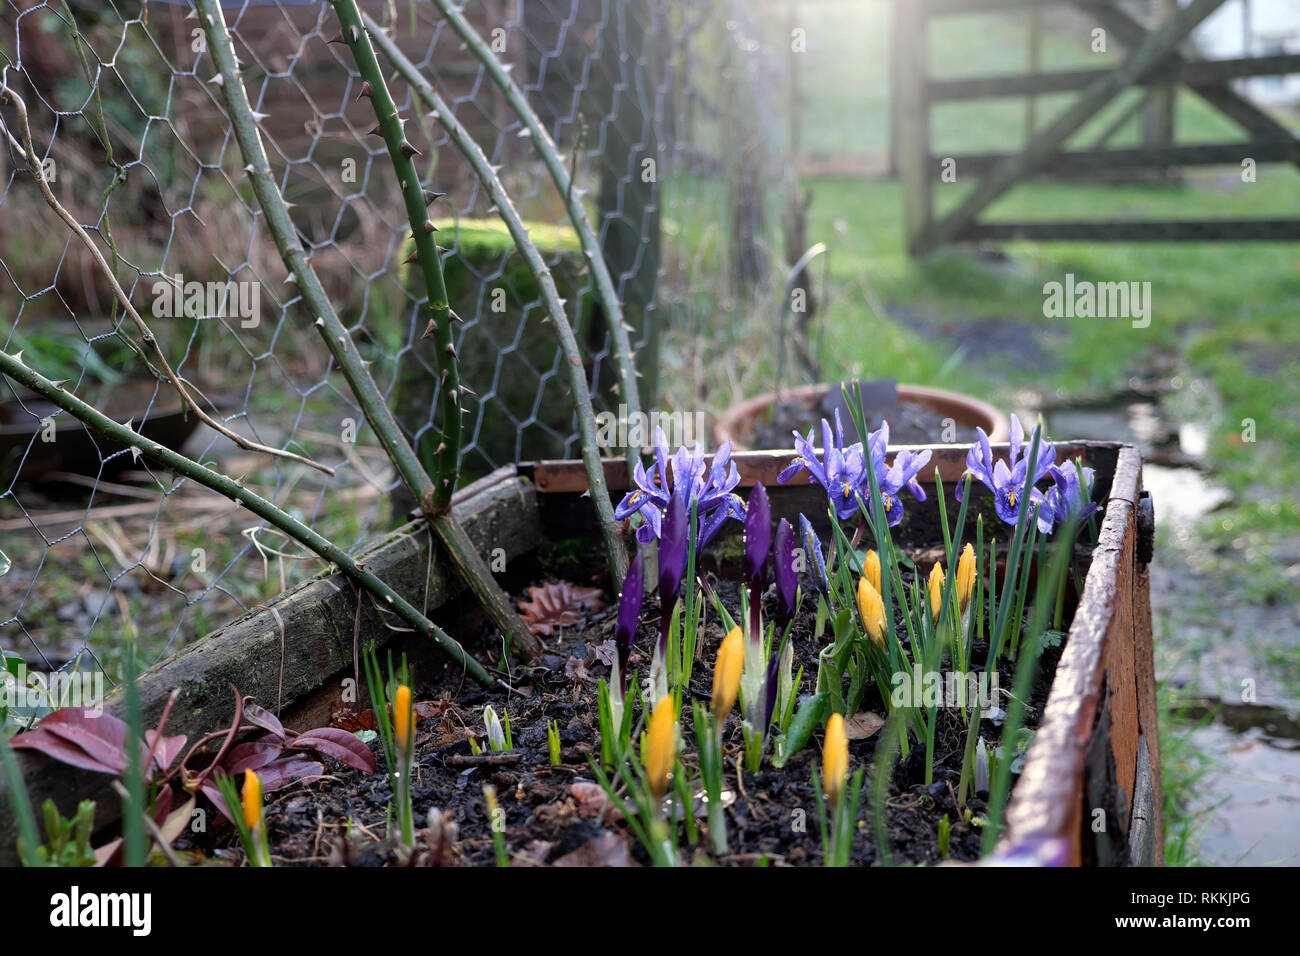 Bulbi a molla iris reticulata in fiore con fiori di crocus giallo crocus che crescono in un grande contenitore di piantatrice in un giardino In Galles Regno Unito KATHY DEWITT Foto Stock